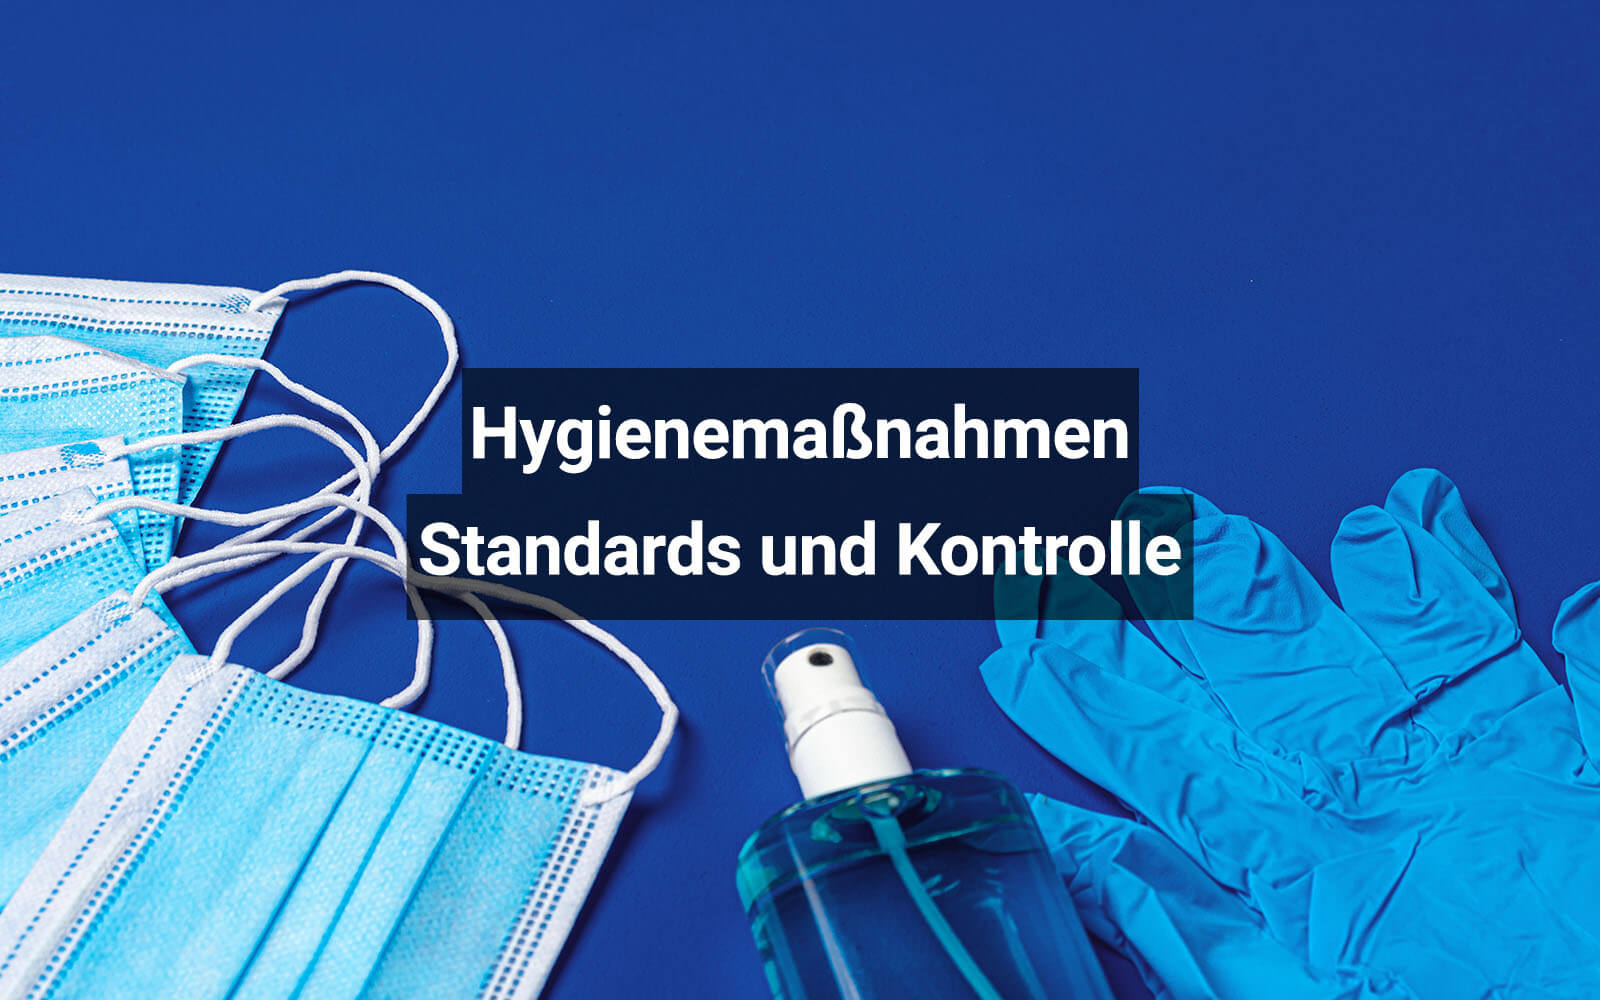 Hygienemaßnahmen: Standards und Kontrolle